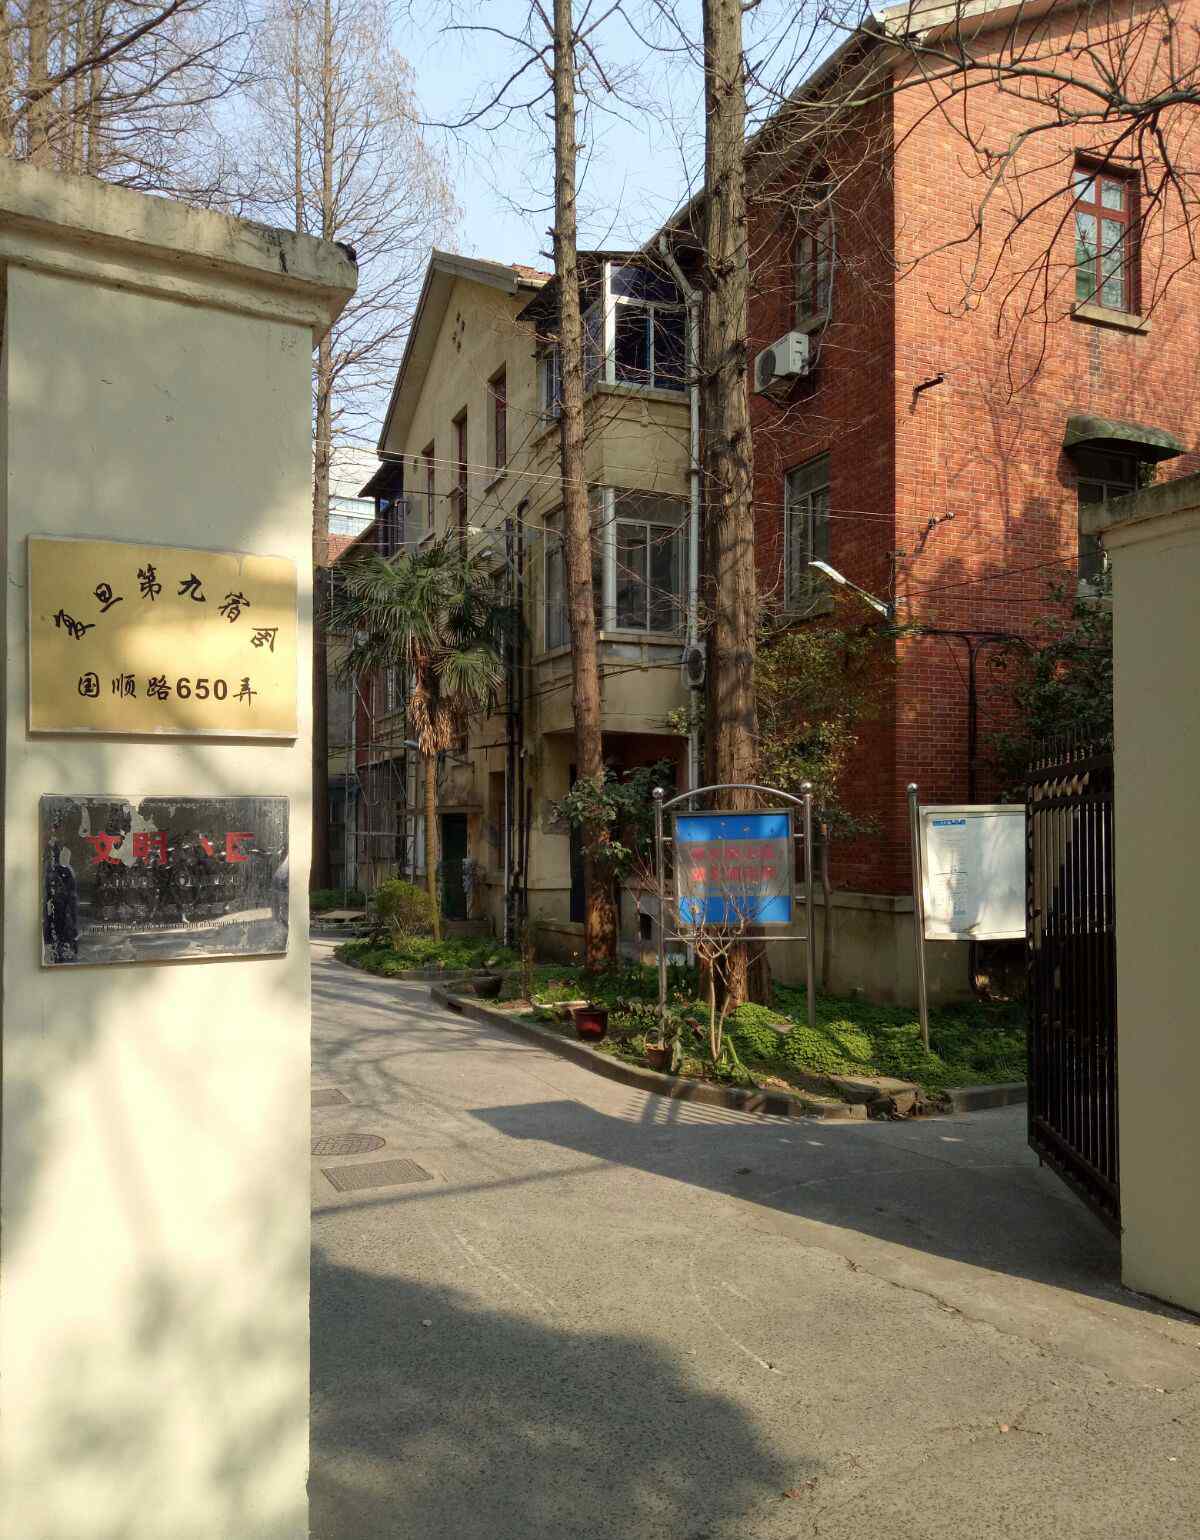 谈家桢 寻找上海名人旧居复旦大学第九宿舍陈望道、苏步青、谈家桢旧居